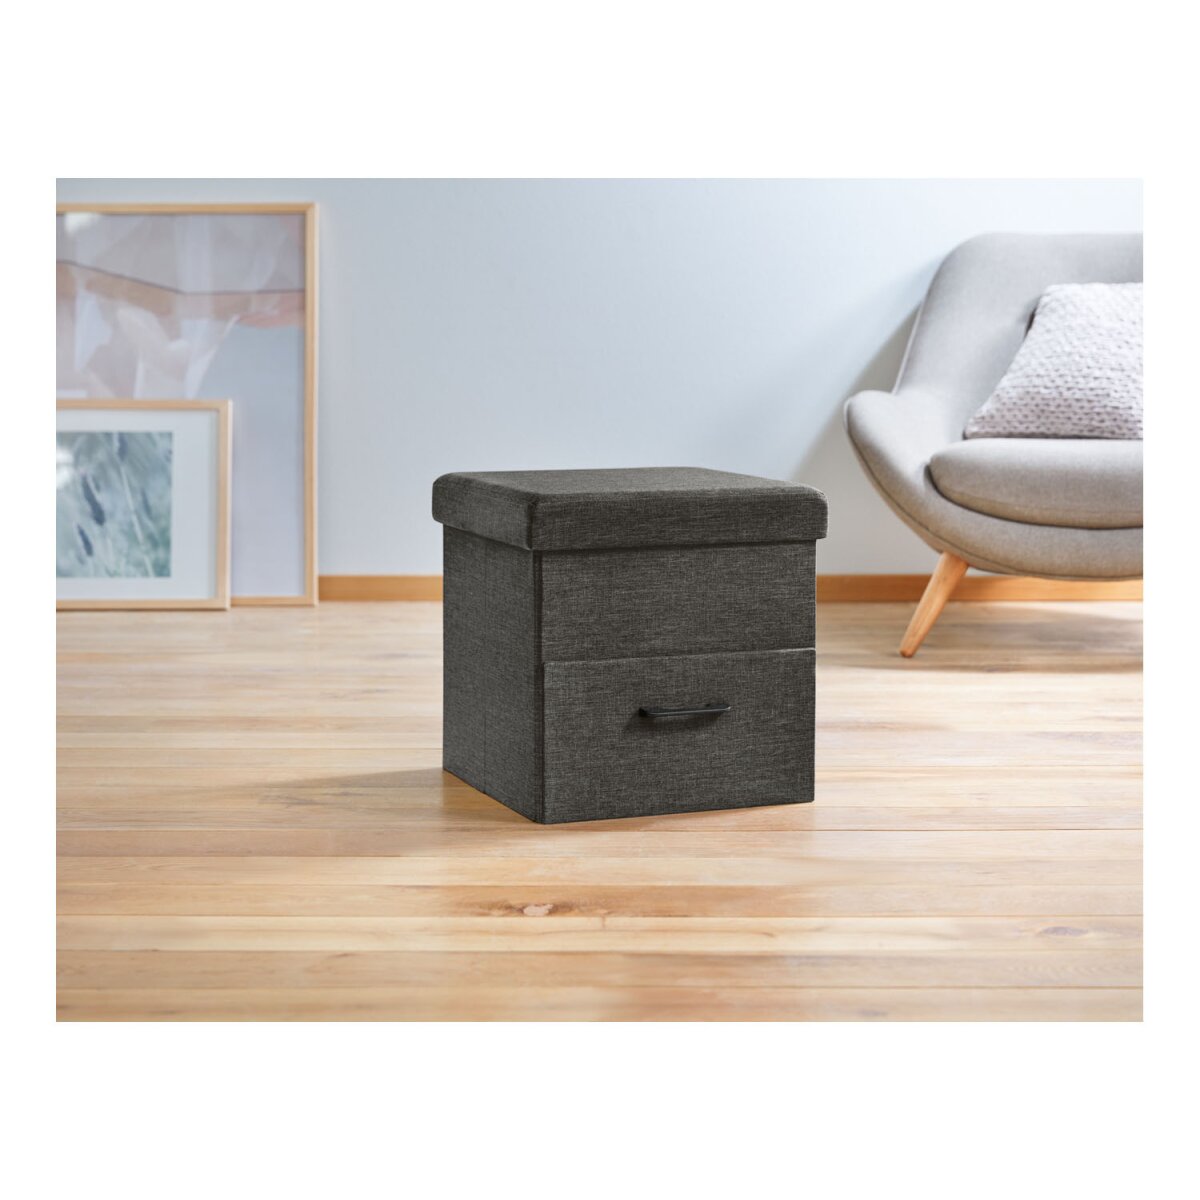 Livarno Home Sitzhocker, faltbar, mit Schubladenfach - B-Ware sehr gut,  11,99 €